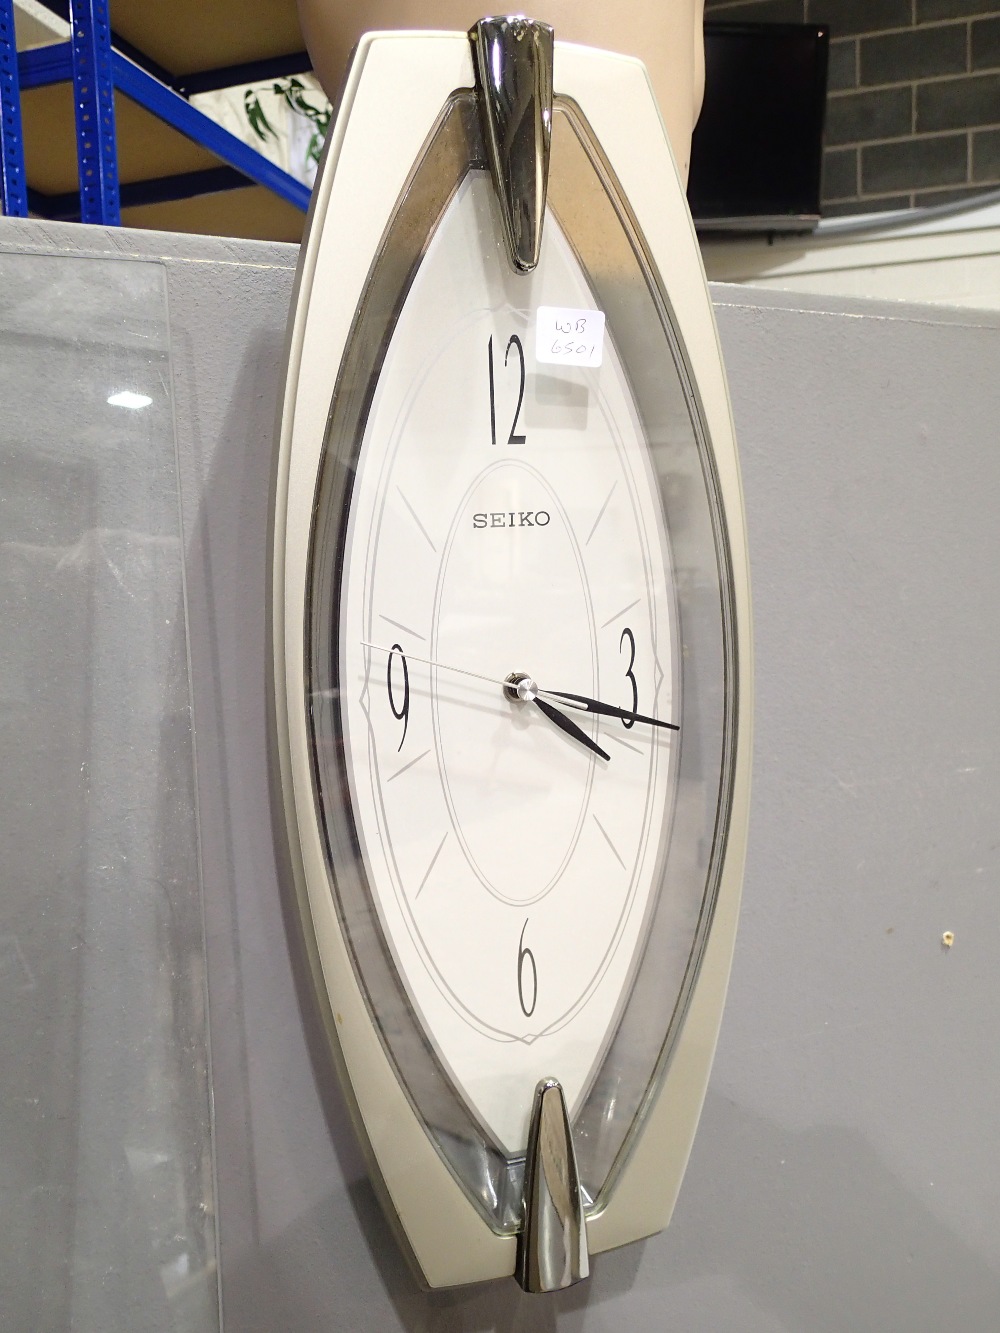 Seiko retro wall clock H: 45 cm